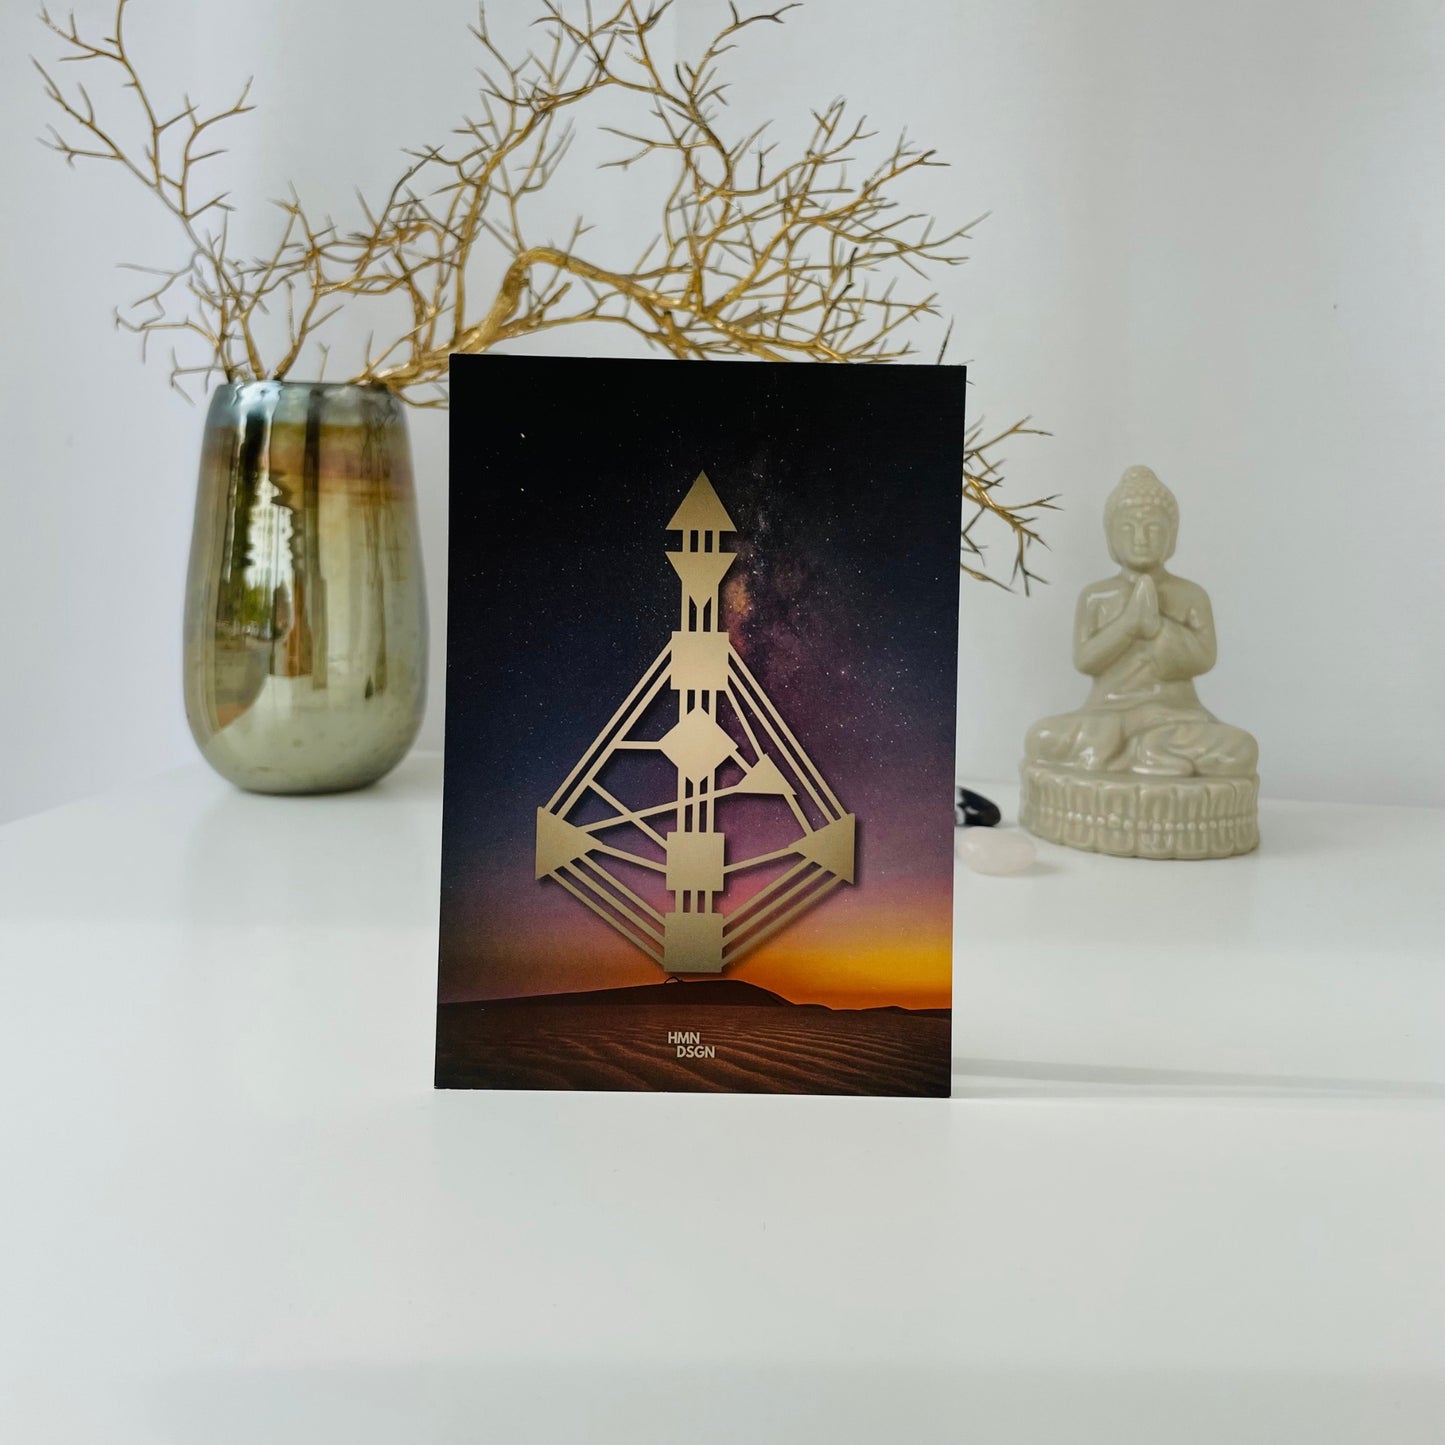 Human Design Bodygraph Postkartenset Sternenhimmel Wüste kaufen in Human Design Shop